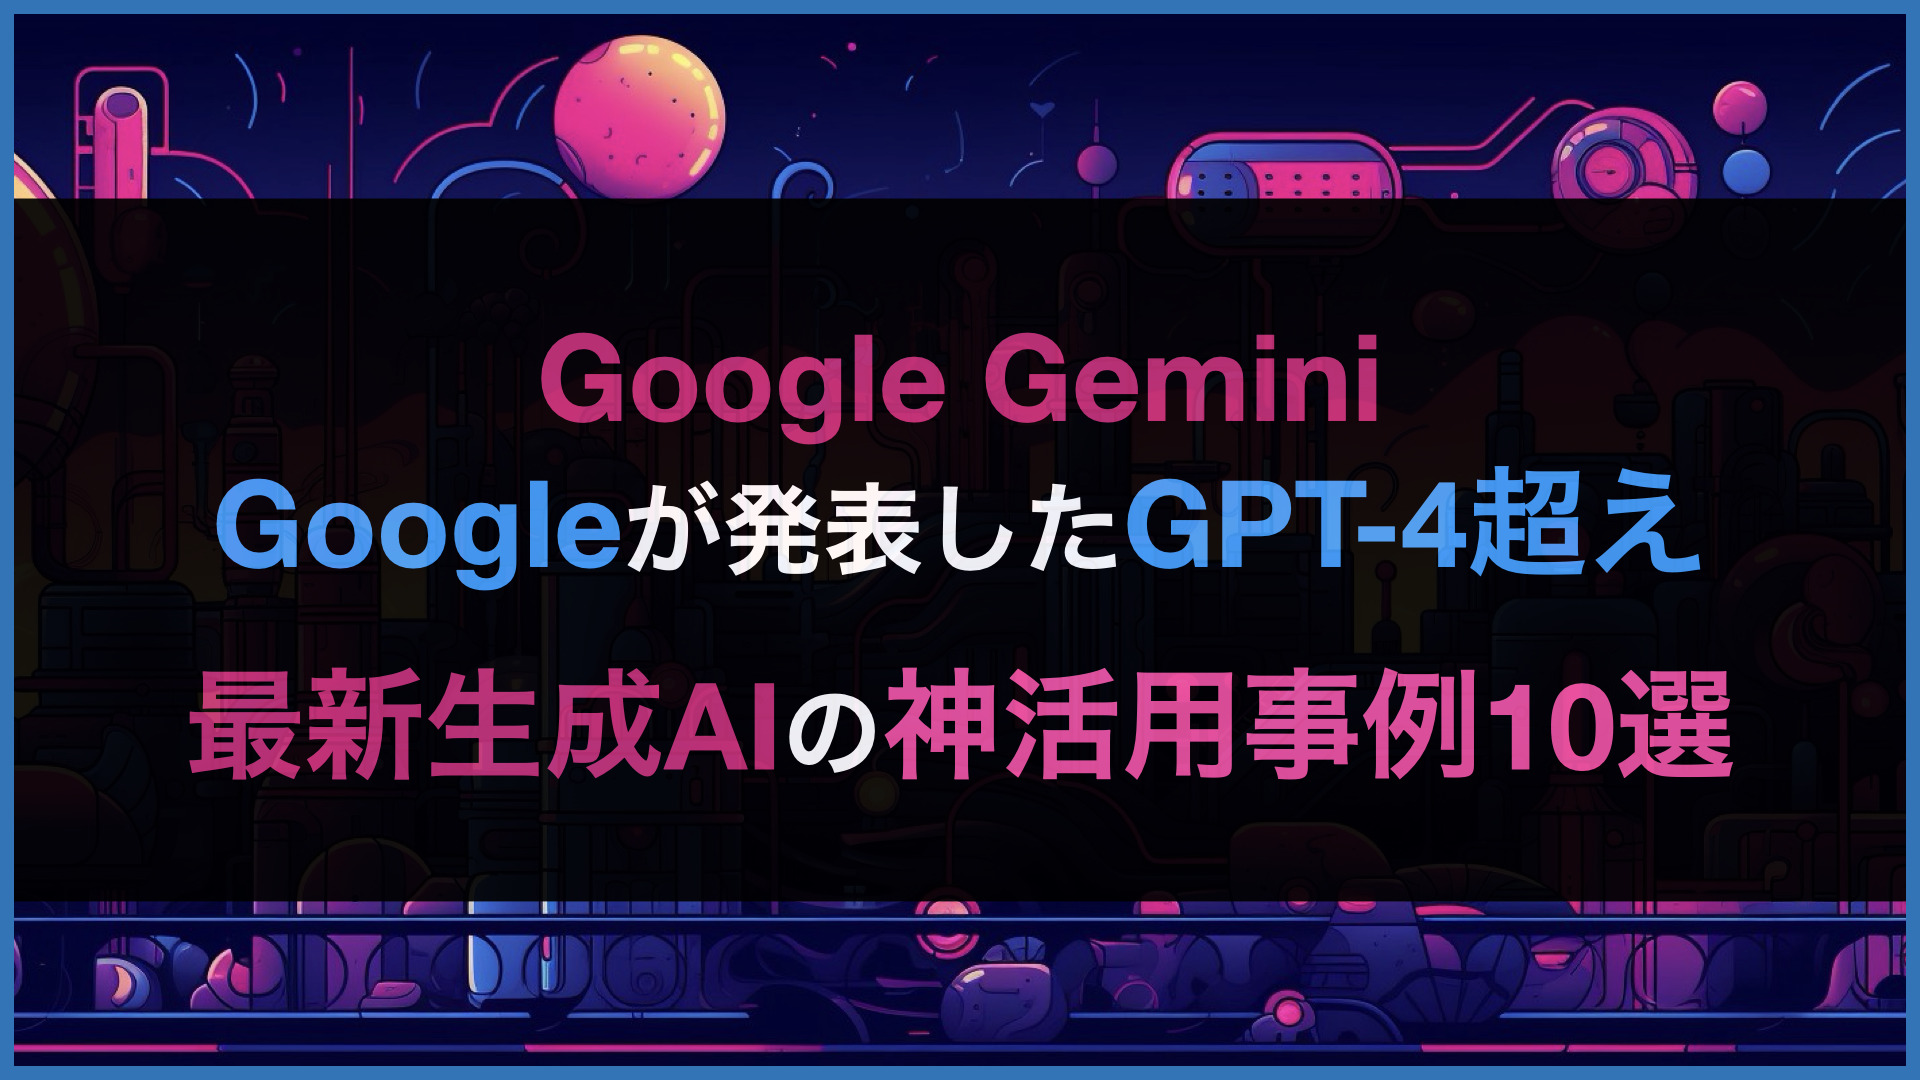 【Gemini Proの使い方まとめ】Googleが発表したGPT-4超えAIのおすすめ活用事例10選 | WEEL